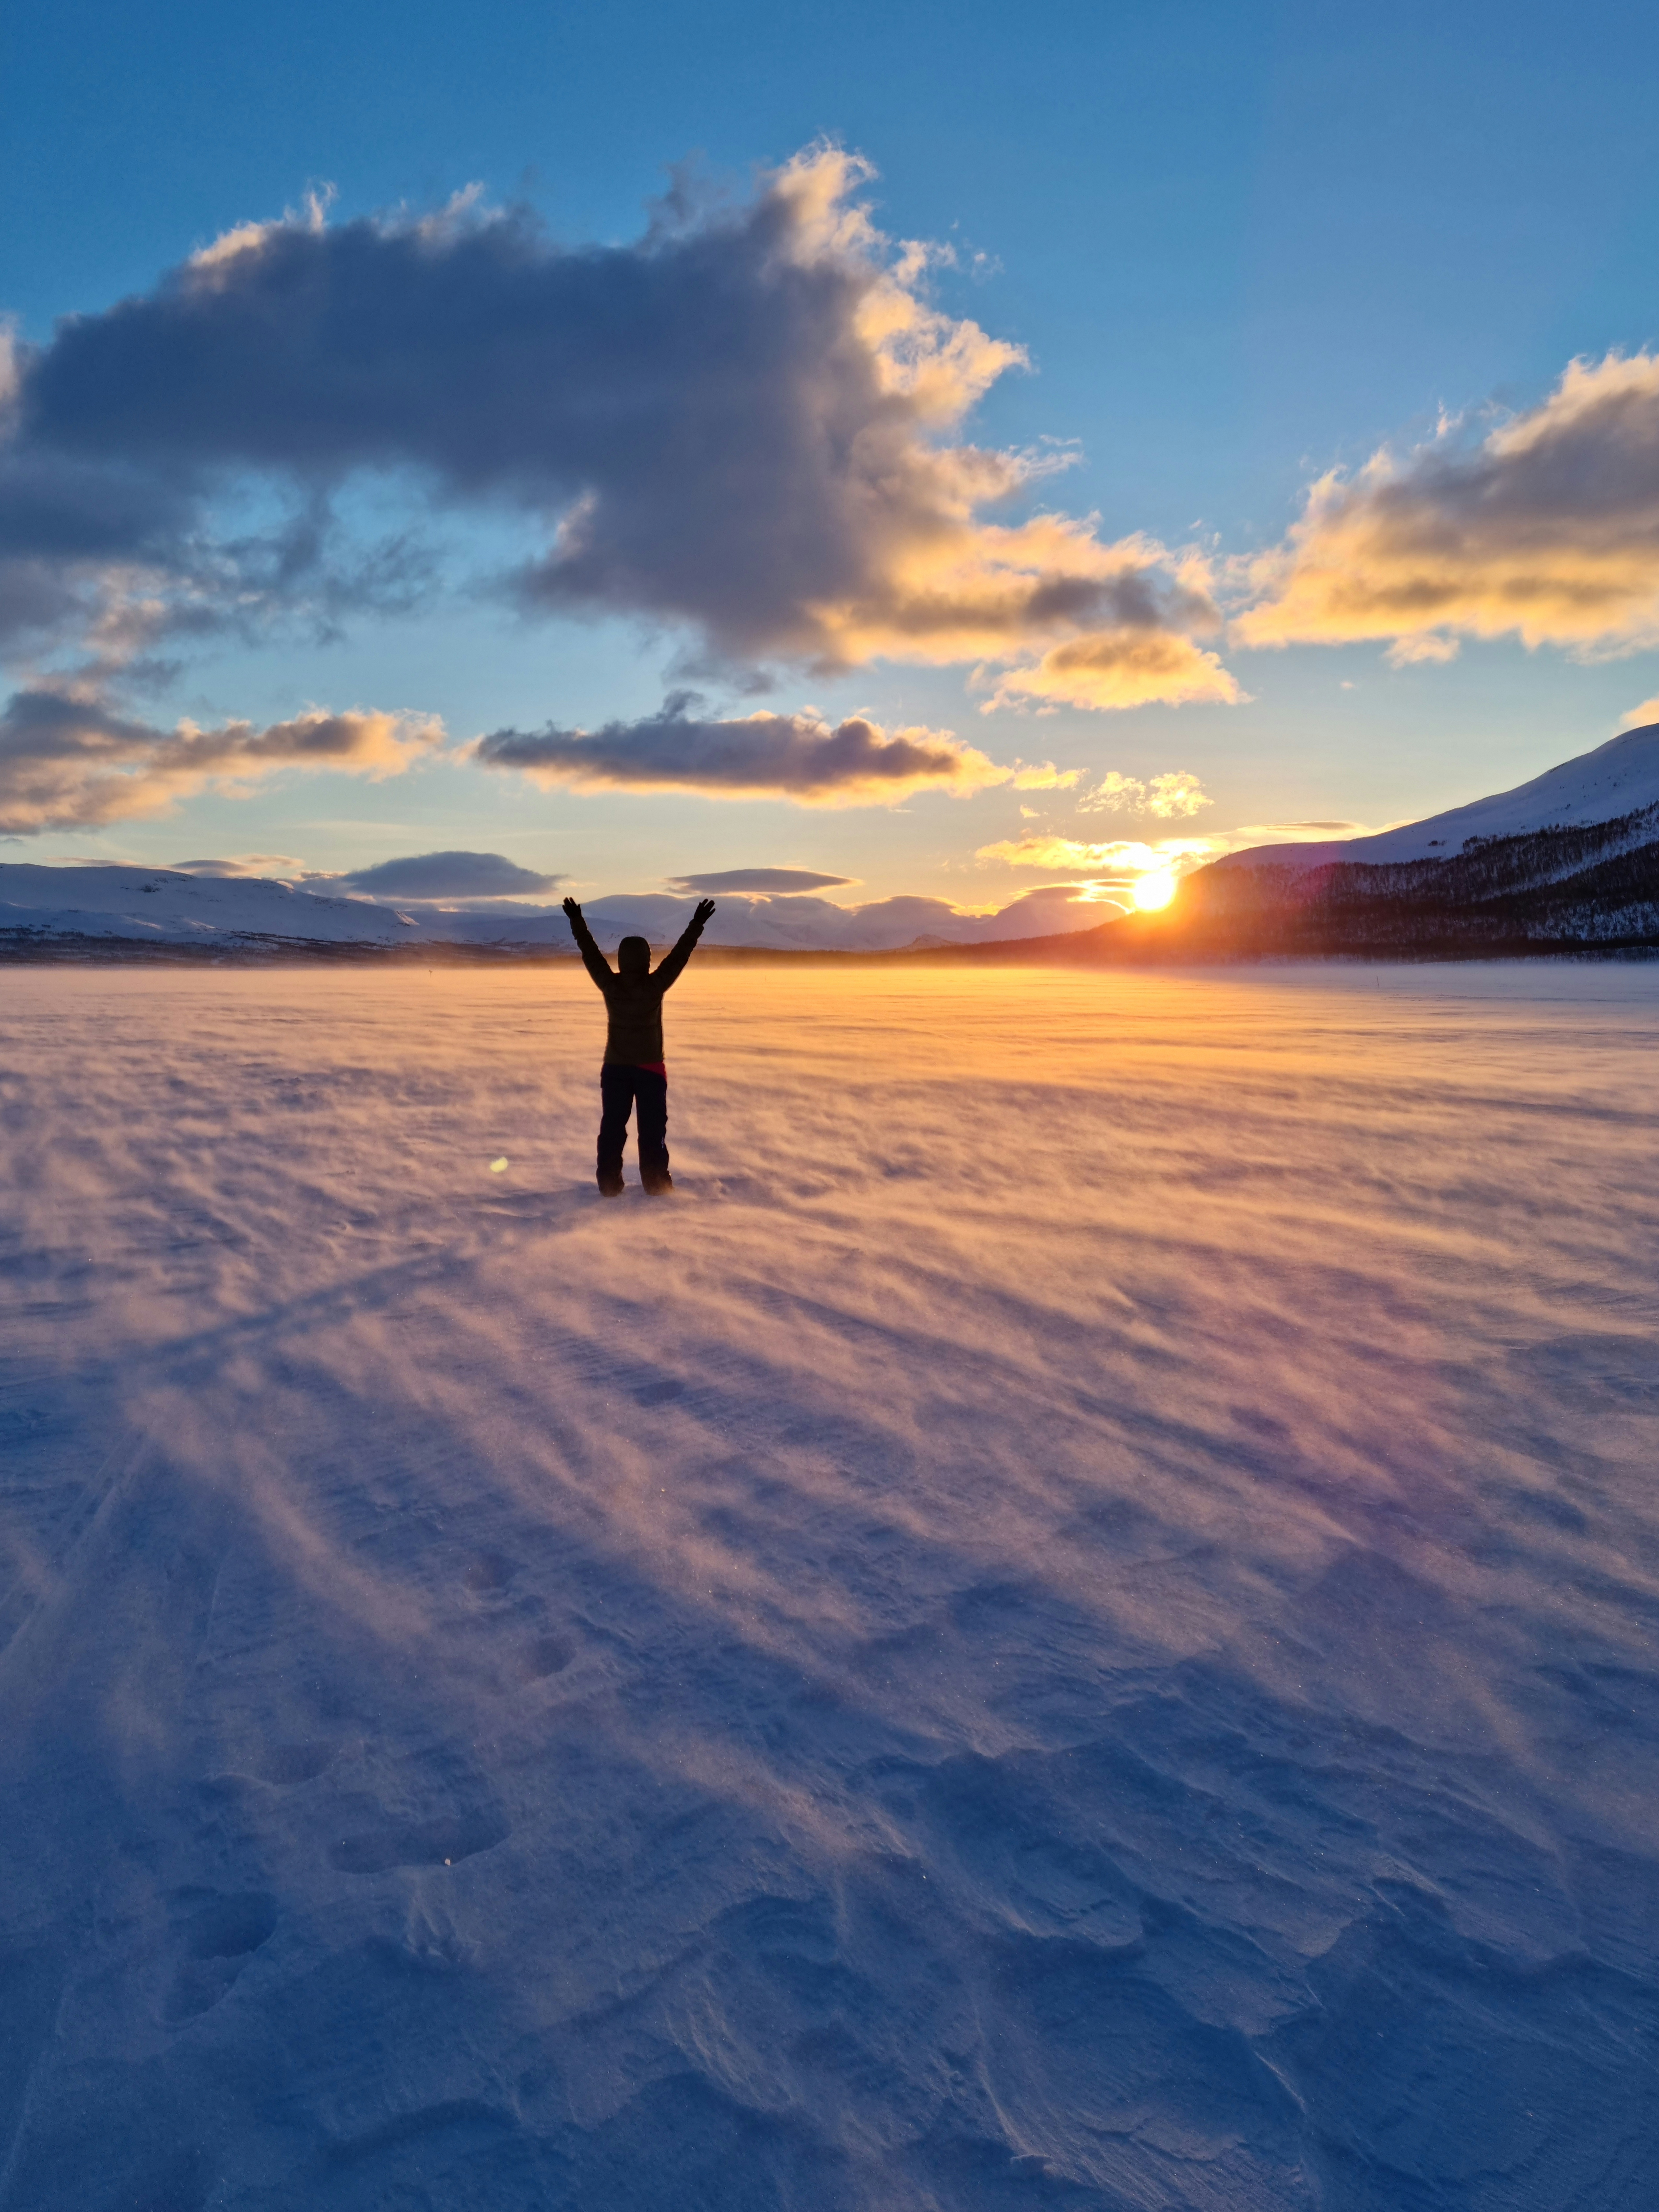 Ihminen seisoo lumisessa tunturimaisemassa kädet ylhäällä auringon laskiessa tunturien taakse.